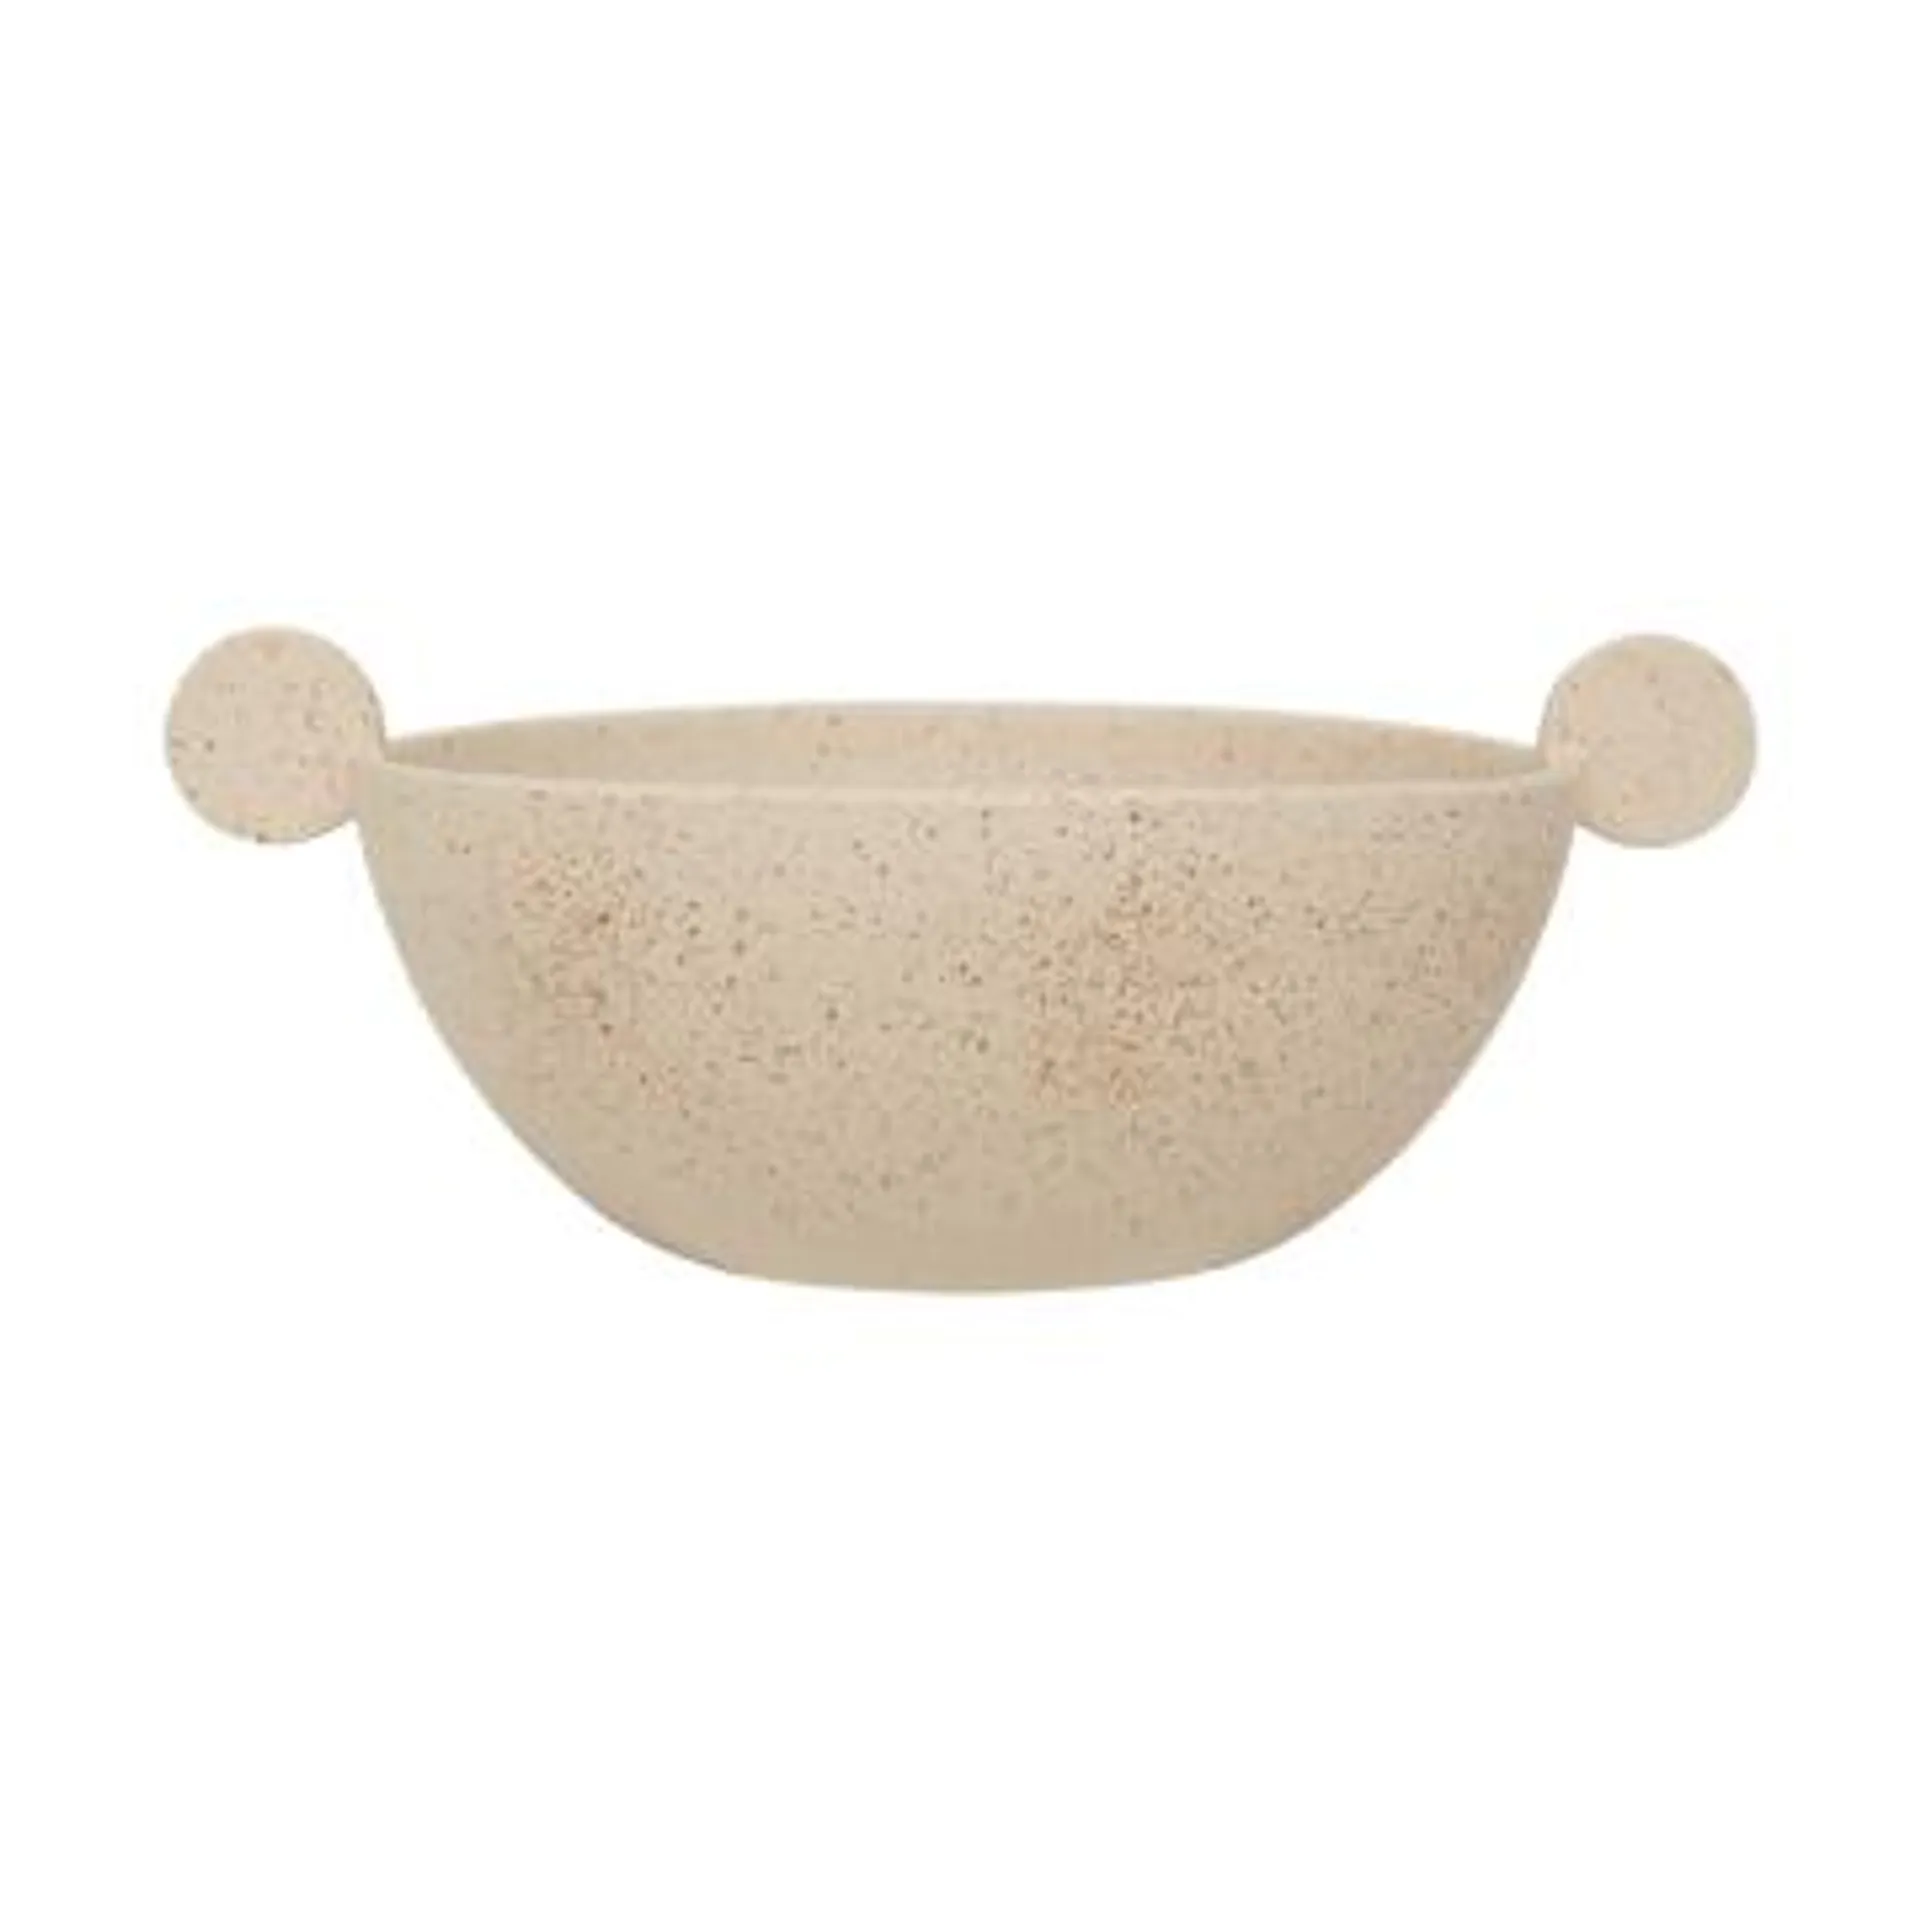 Korvat serving bowl Ø28 cm